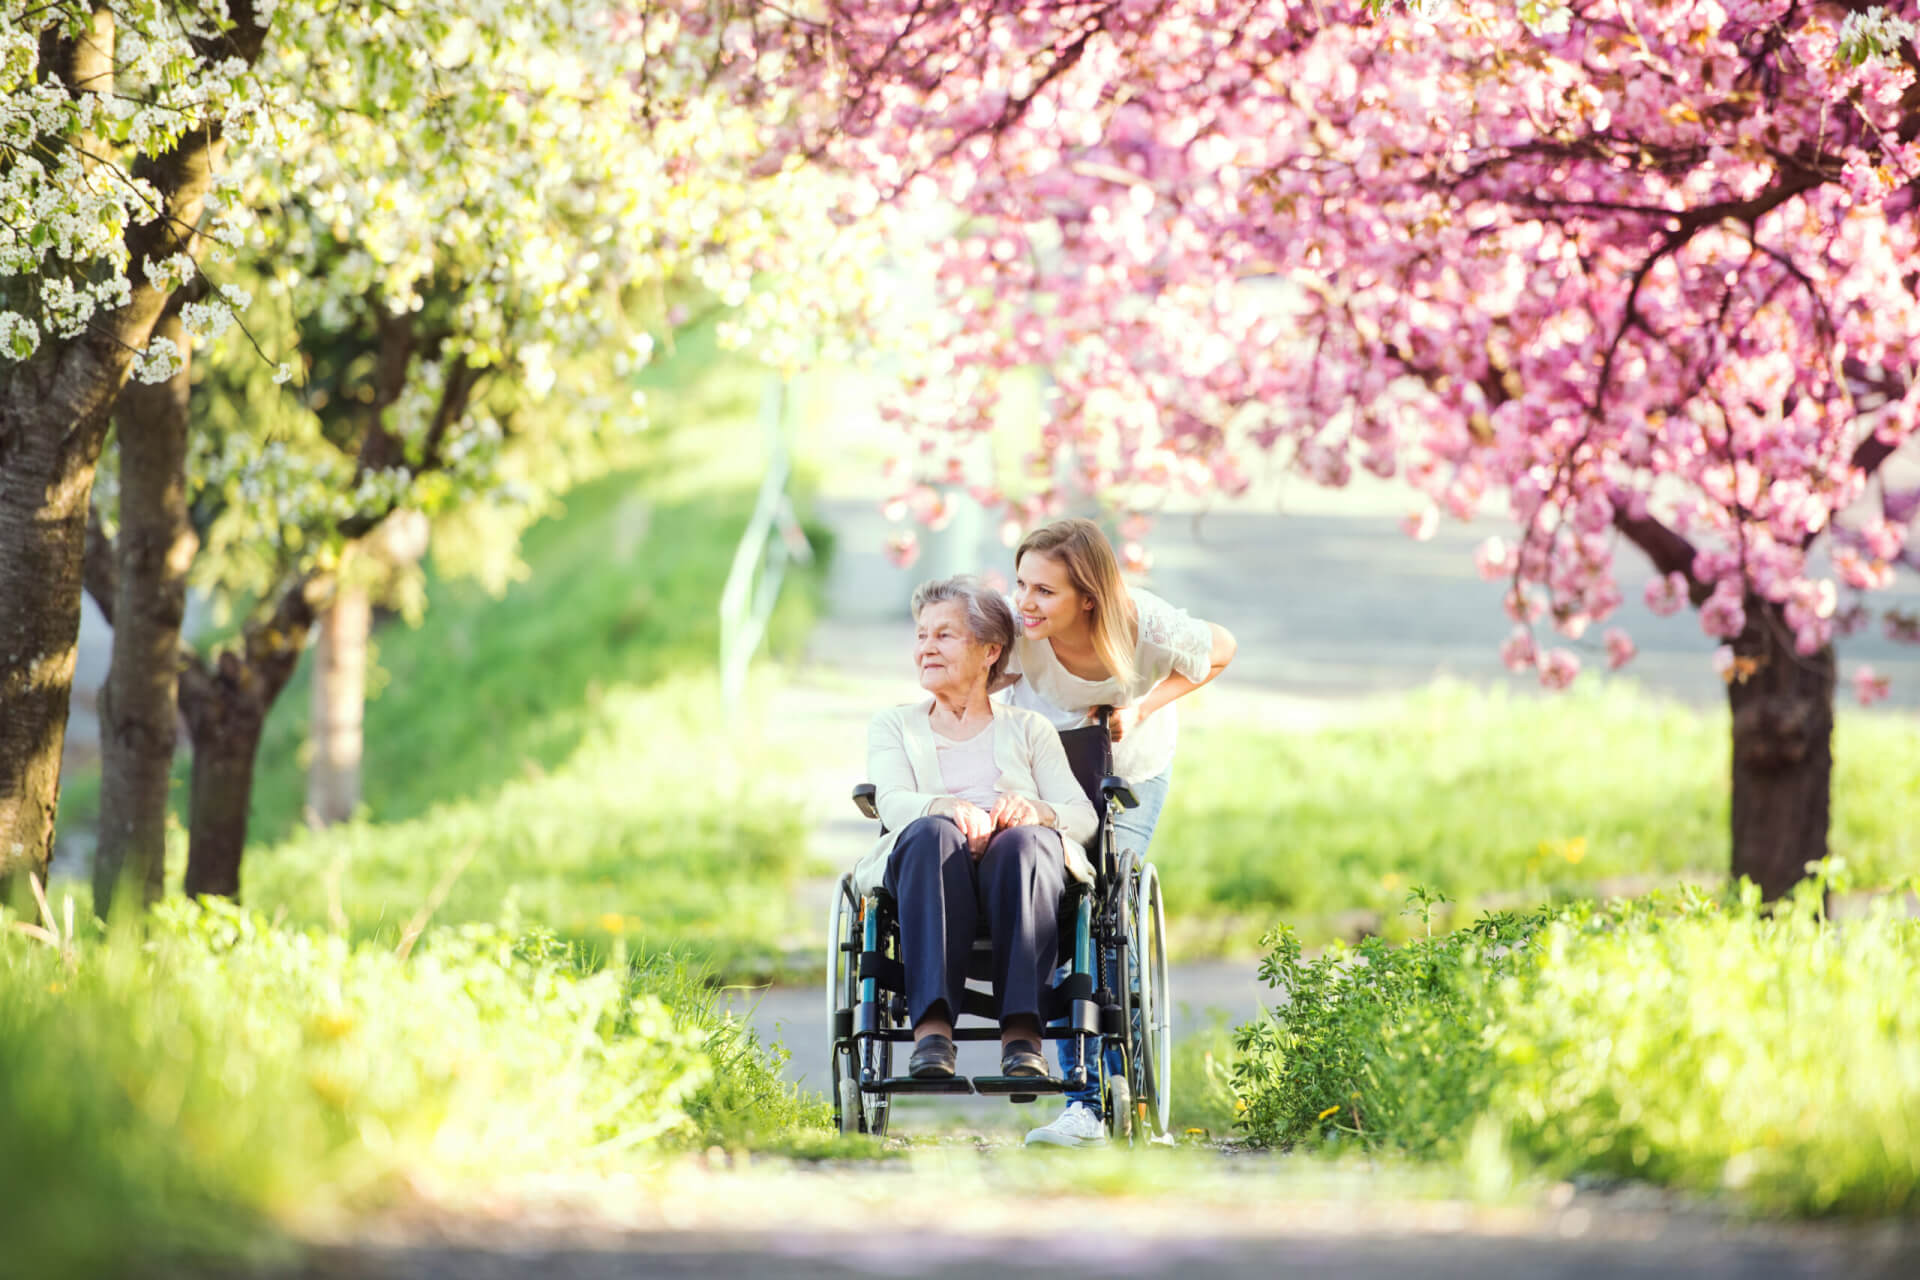 Una mujer rubia empuja a una anciana en silla de ruedas por un parque. Están rodeados de árboles, algunos con flores rosadas de primavera.